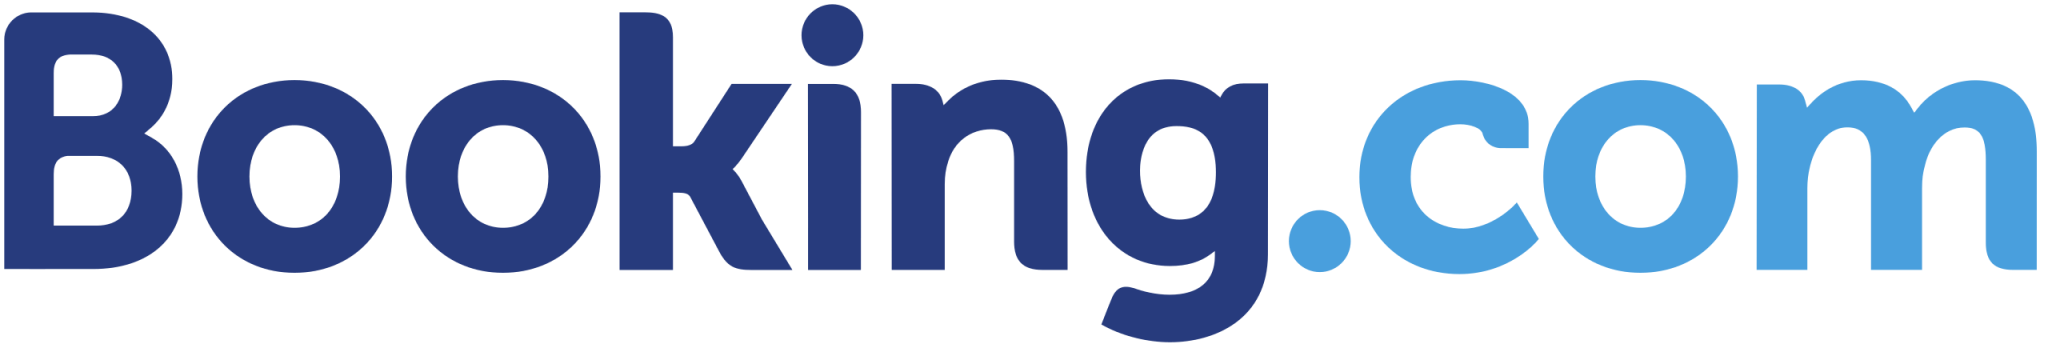 booking.com-logo-2048x344